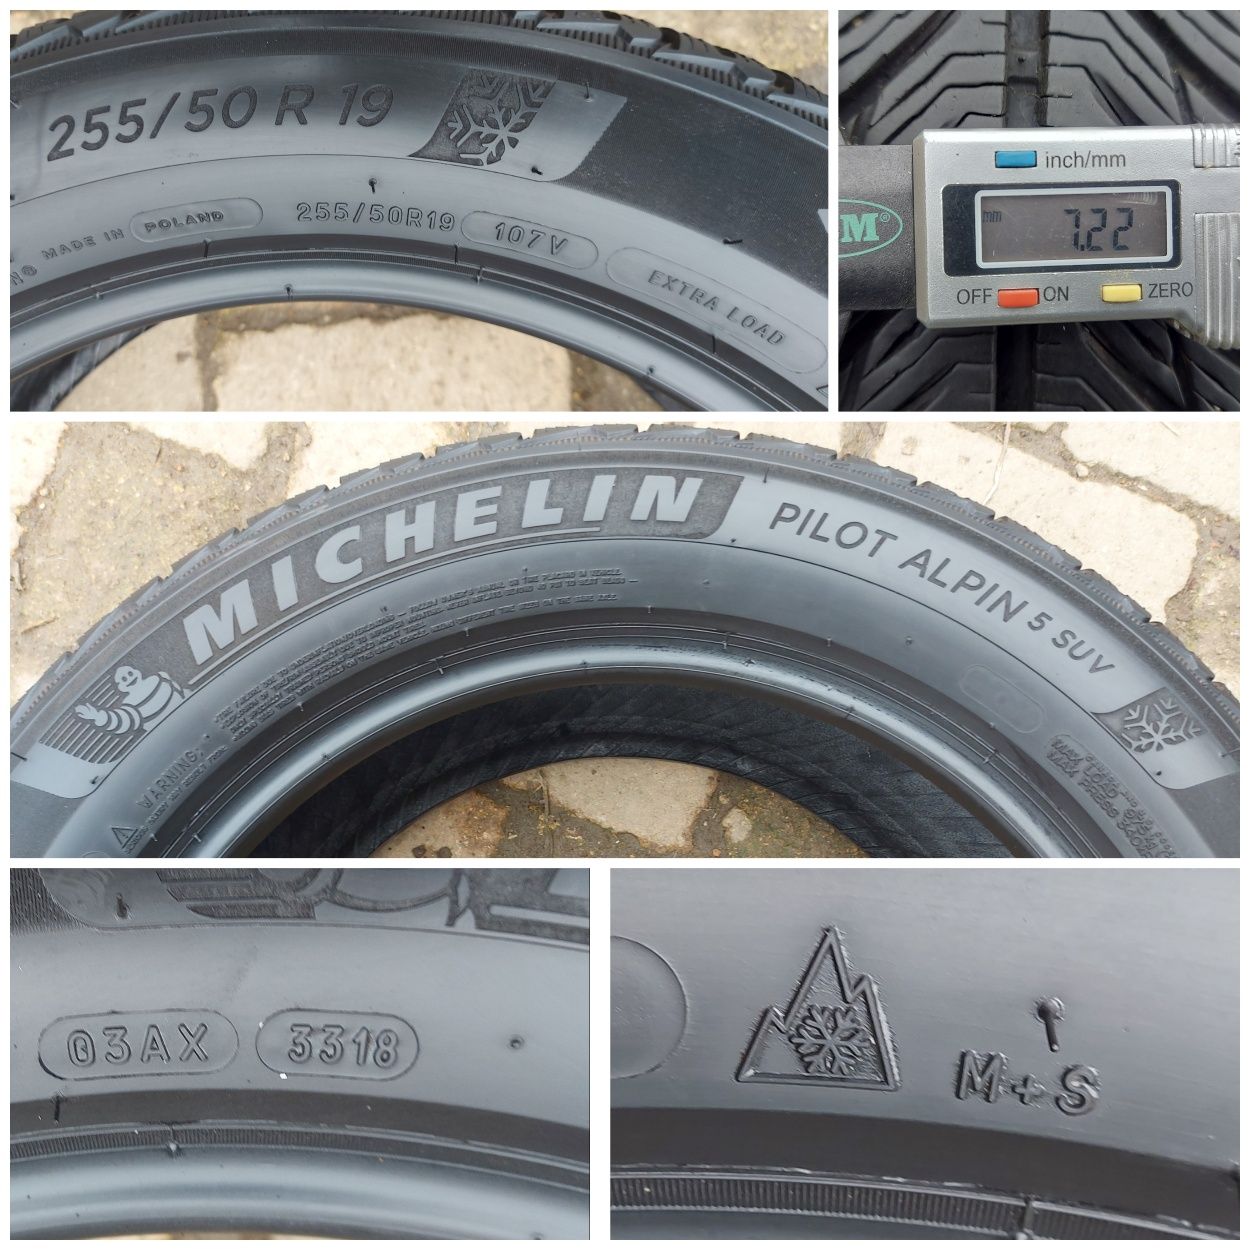 O bucată 255/50 R19 M+S iarnă - una Bridgestone Continental Michelin